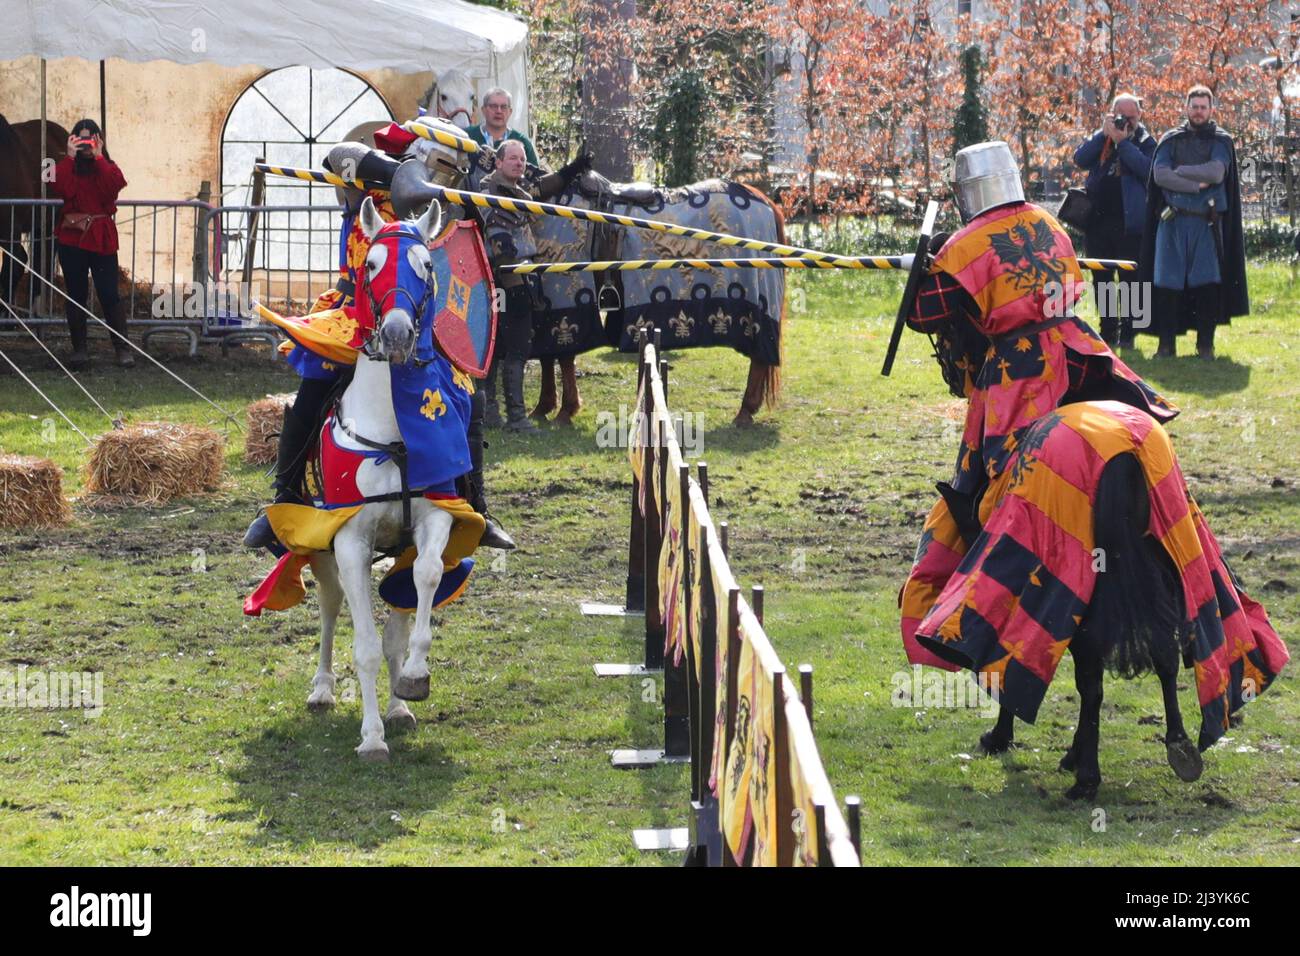 Ouffet, Belgique. 10th avril 2022. Des cavaliers en costumes se sont  performances lors du festival médiéval d'Ouffet en 20th à Ouffet, province  de Liège, Belgique, le 10 avril 2022. Mettant en valeur